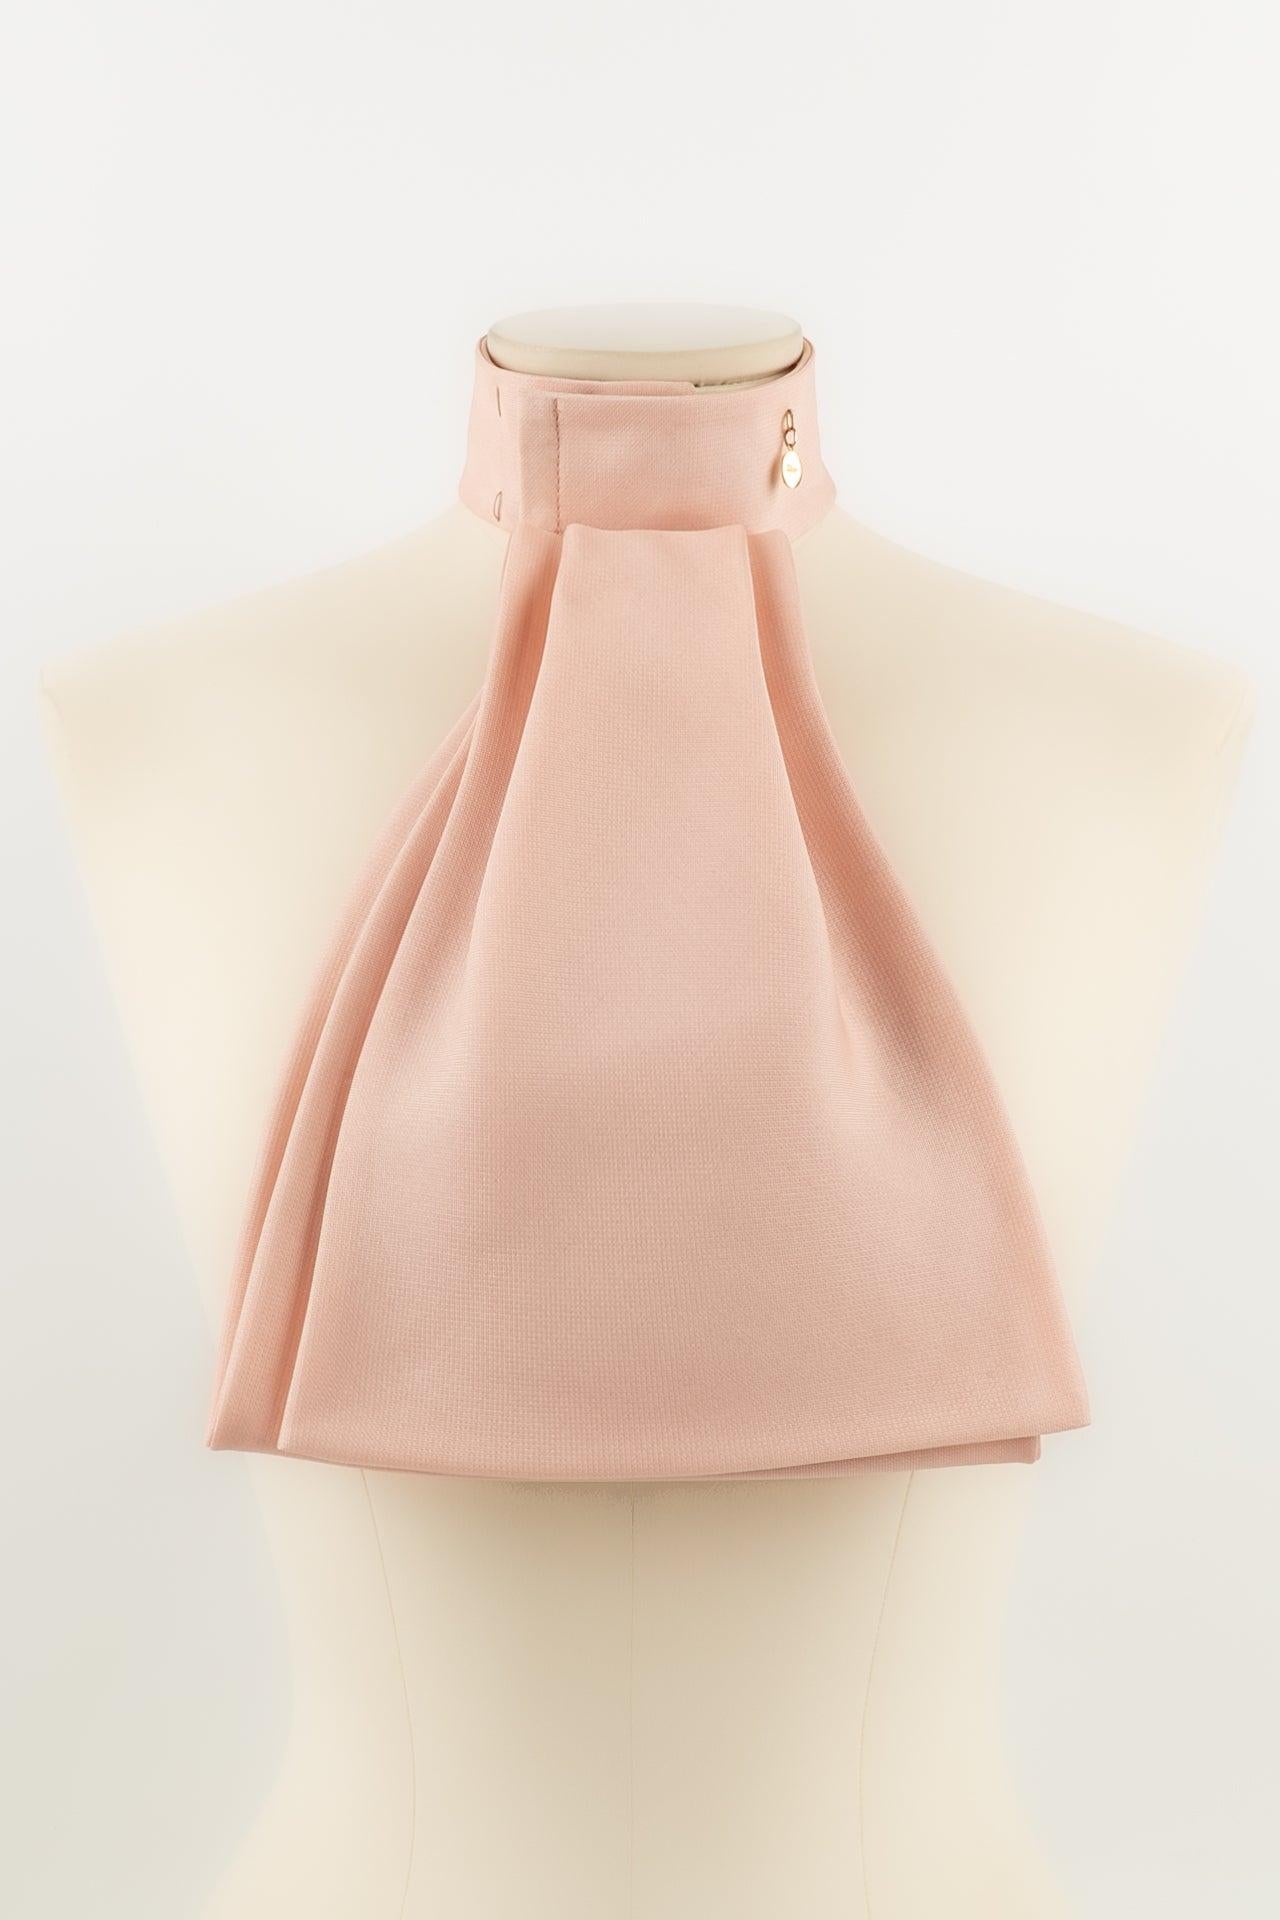 Dior - Cravate ascot en soie rose.

Informations complémentaires :
Dimensions : Hauteur : 28 cm - Tour de cou : de 32,5 cm à 35,5 cm
Condit : Très bon état.
Numéro de référence du vendeur : ACC23